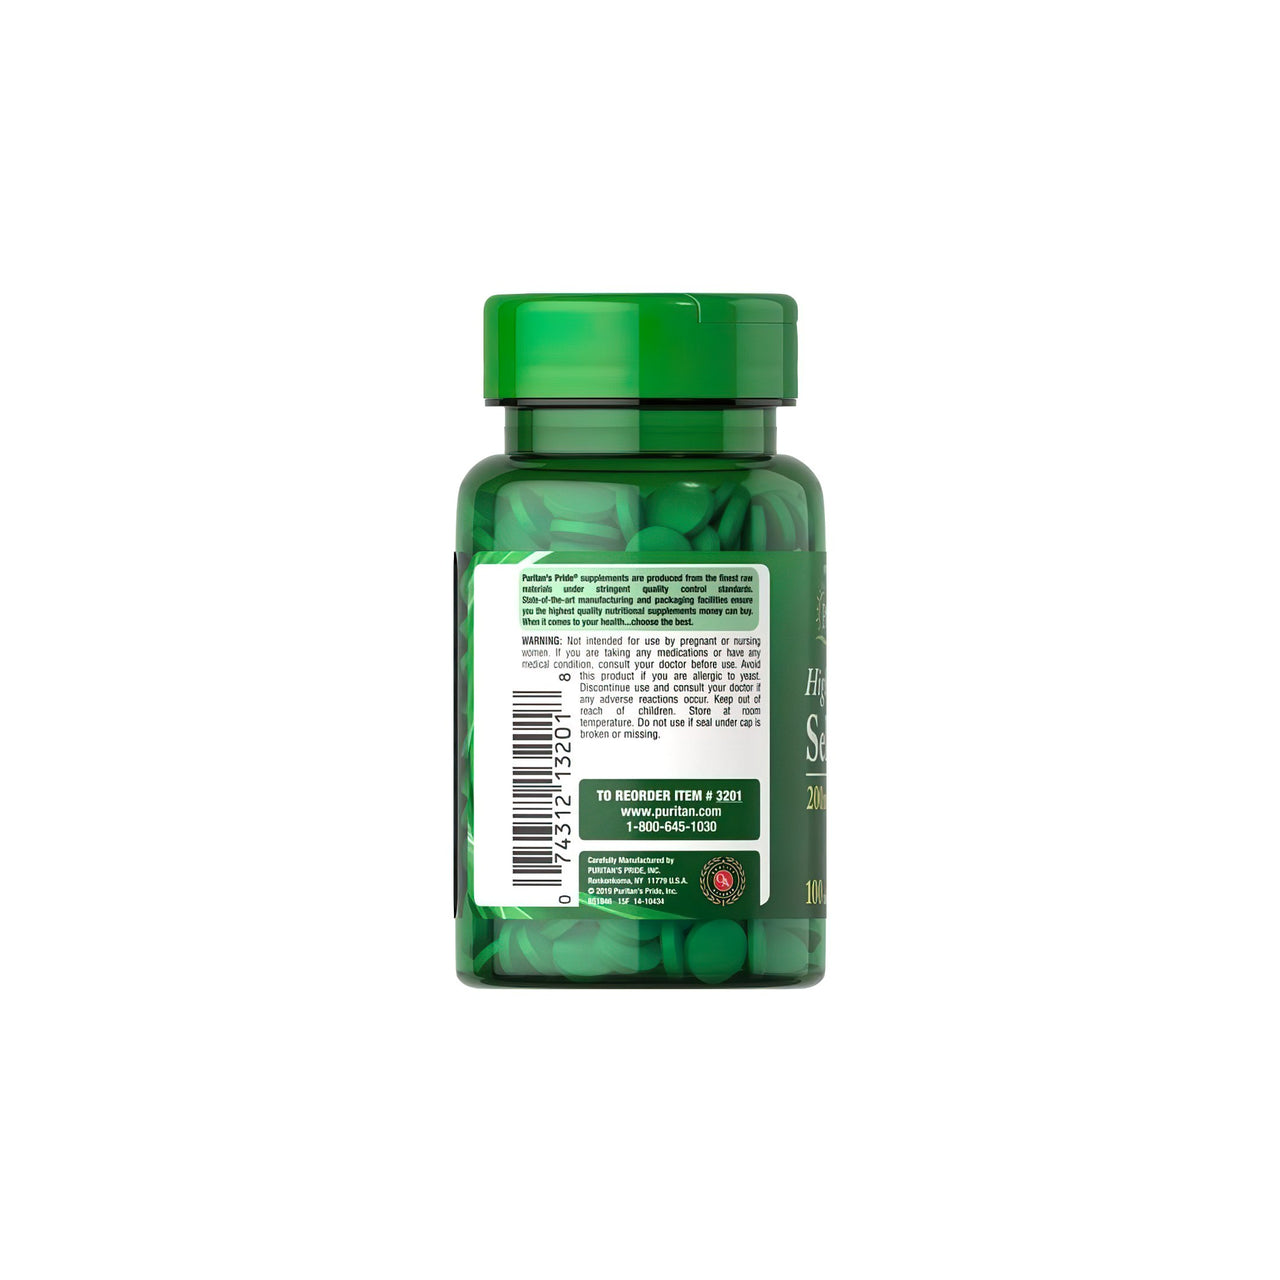 Um frasco de Puritan's Pride Selenium 200 mcg 100 comprimidos, um suplemento alimentar que contém chá verde, um antioxidante, sobre um fundo branco.